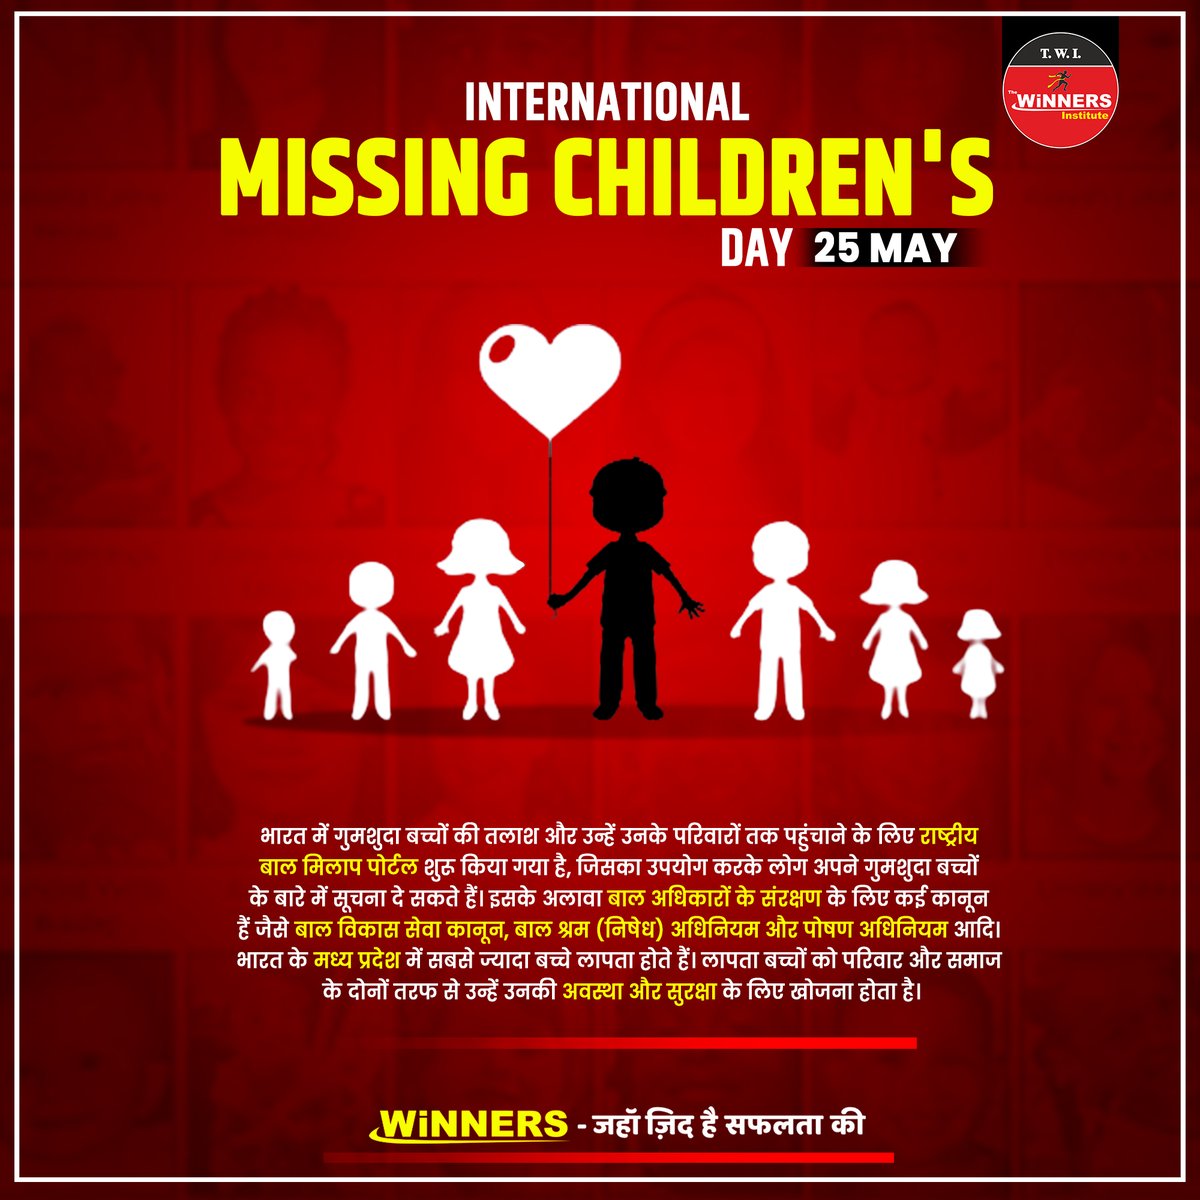 🧒INTERNATIONAL MISSING CHILDREN'S DAY 👨‍👩‍👦‍👦
भारत में गुमशुदा बच्चों की तलाश और उन्हें उनके परिवारों तक पहुंचाने के लिए राष्ट्रीय बाल मिलाप पोर्टल शुरू किया गया है |
. 
. 
. 
. 
#trinitymountglobalmissingkids #missingchildren #missing #missingchild #missingperson  #missingpeople #MP